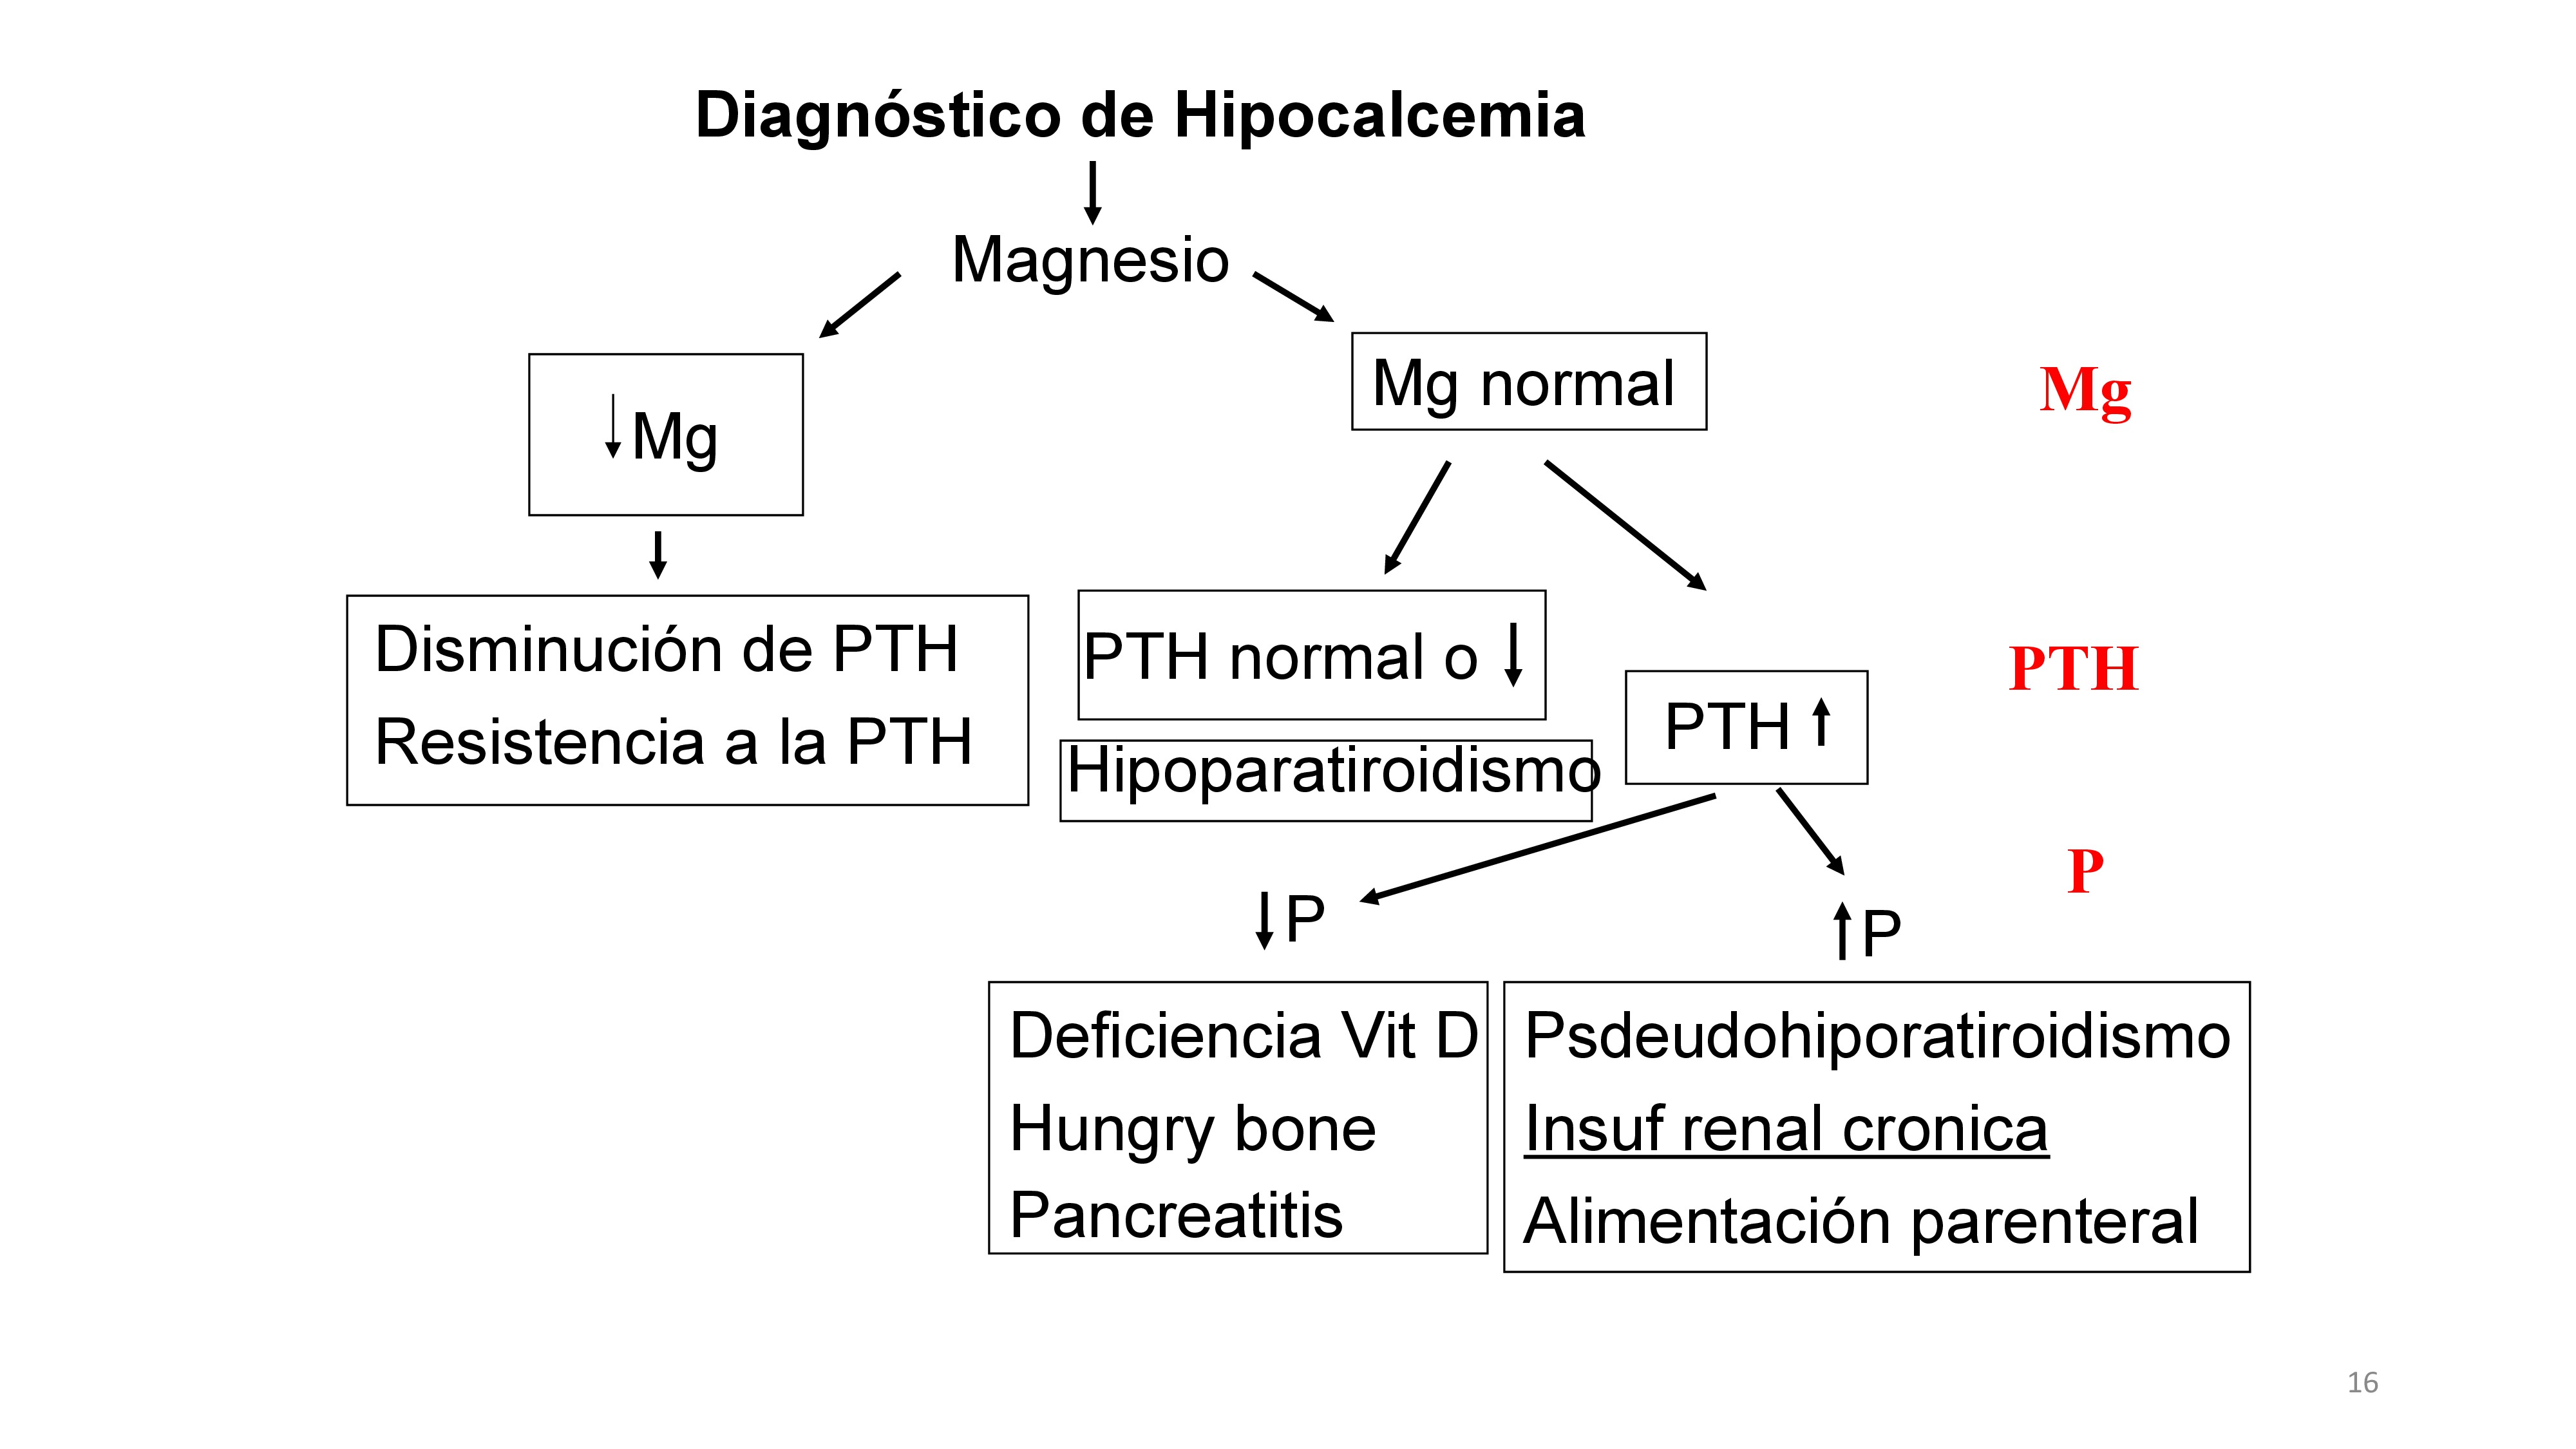 Para diagnosticar hipocalcemia propongo el siguiente esquema:1-Descartar una marcada disminución de Magnesio que interfiere con la producción de PTH y con la acción calcémica de la PTH.2-El siguiente paso es medir la concentración de PTH que puede ser baja lo cual indica hipoparatiroidismo pero también puede indicar hipoparatiroidismo si teniendo un calcio bajo no se detecta un aumento de PTH ya que las paratiroides han de producir más PTH en presencia de hipocalcemia. 3-Si la PTH es elevada hay que determinar los niveles de fosfato (P) sérico. En el caso de que el P sea bajo podría existir deficiencia de Vit D que causa de disminución de la absorción intestinal de P y Ca. También puede existir un hueso que incorpora gran cantidad de calcio ¿hueso hambriento¿ que se observa cuando hay descenso rápido de del remodelado oseo por ejemplo cuando hay descenso rápido de la PTH. En las pancreatitis puede ocurrir deposición de Ca y P junto con lípidos en tejido pancreático pero también existen evidencia de que disminuye la producción de PTH y es posible que esta ultima sea la causa fundamental de la hipocalcemia. Si el P es alto podría existir pseudohipoparatiroidismo que es un defecto genético de la proteína G ligada al receptor de la PTH. Una de las causas más frecuentes de hipocalcemia es la insuficiencia renal crónica que es causada por una resistencia del hueso a la acción de la PTH y el alto P es en parte responsable de que exista resistencia esquelética a la acción del PTH. Una alimentacion parenteral con poco mucho P puede producir una reducción el los niveles de Ca.